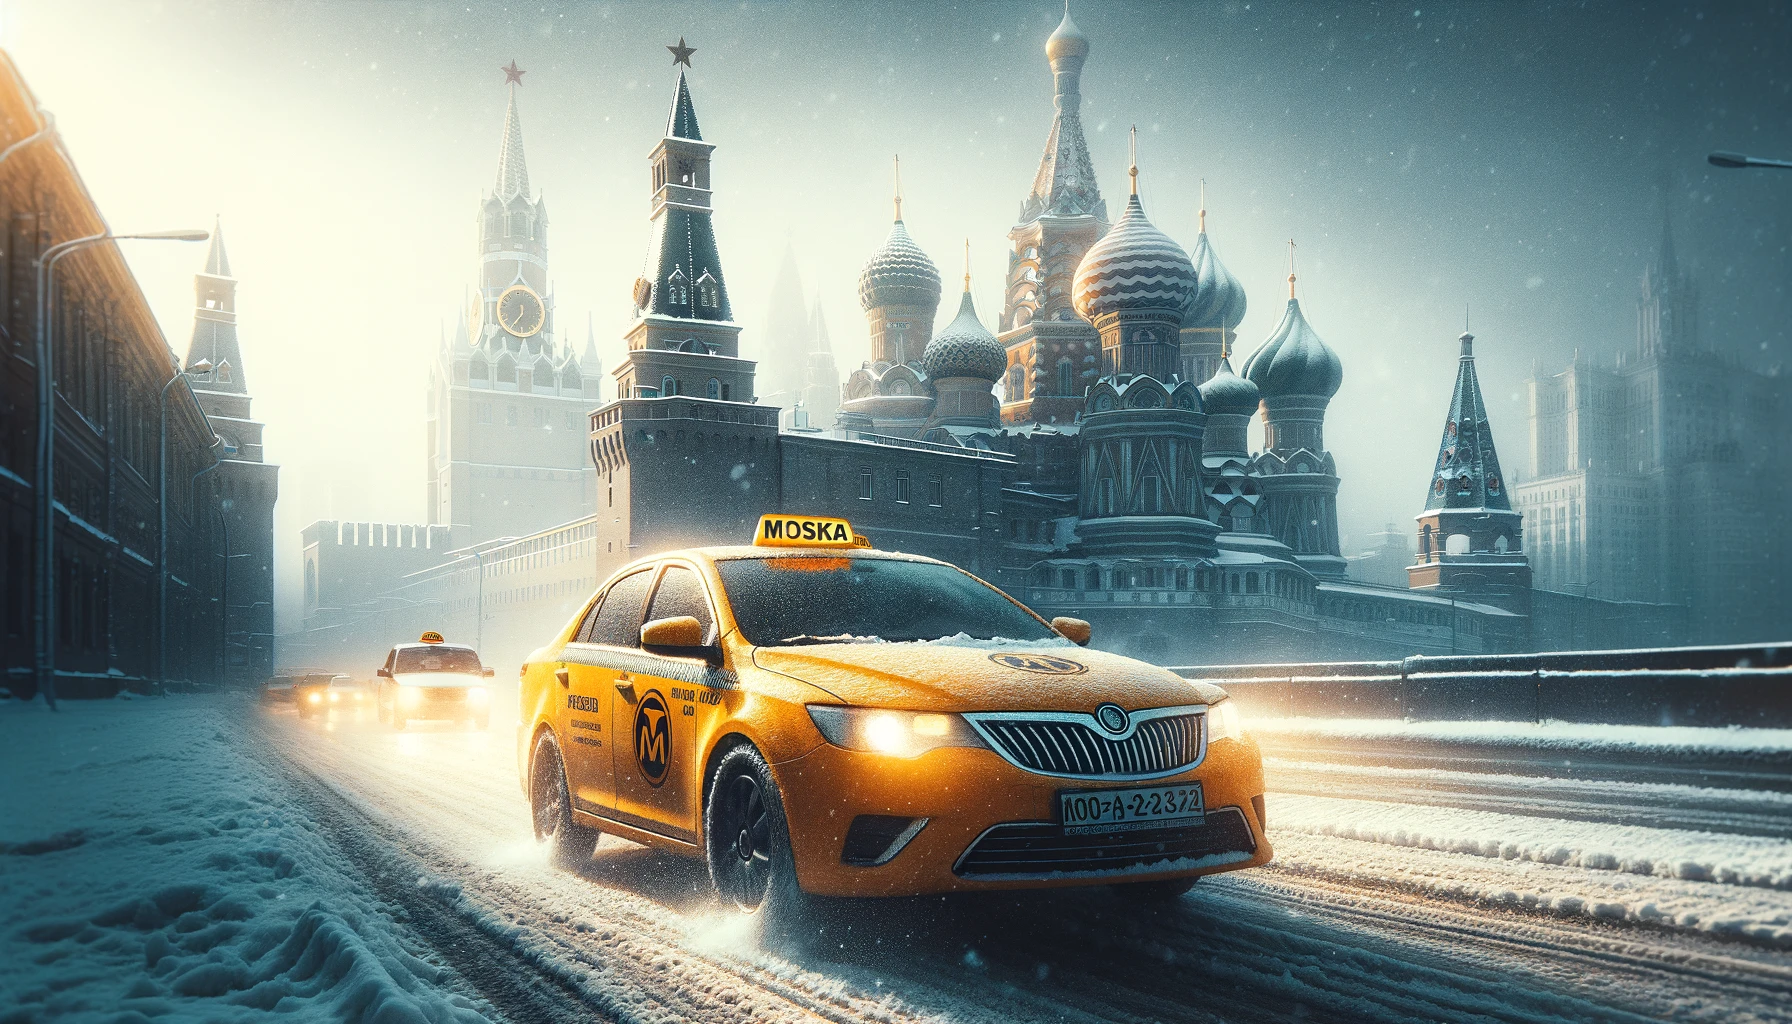 Яндекс раскрыл секреты, как не быть заблокированным в Яндекс.Такси